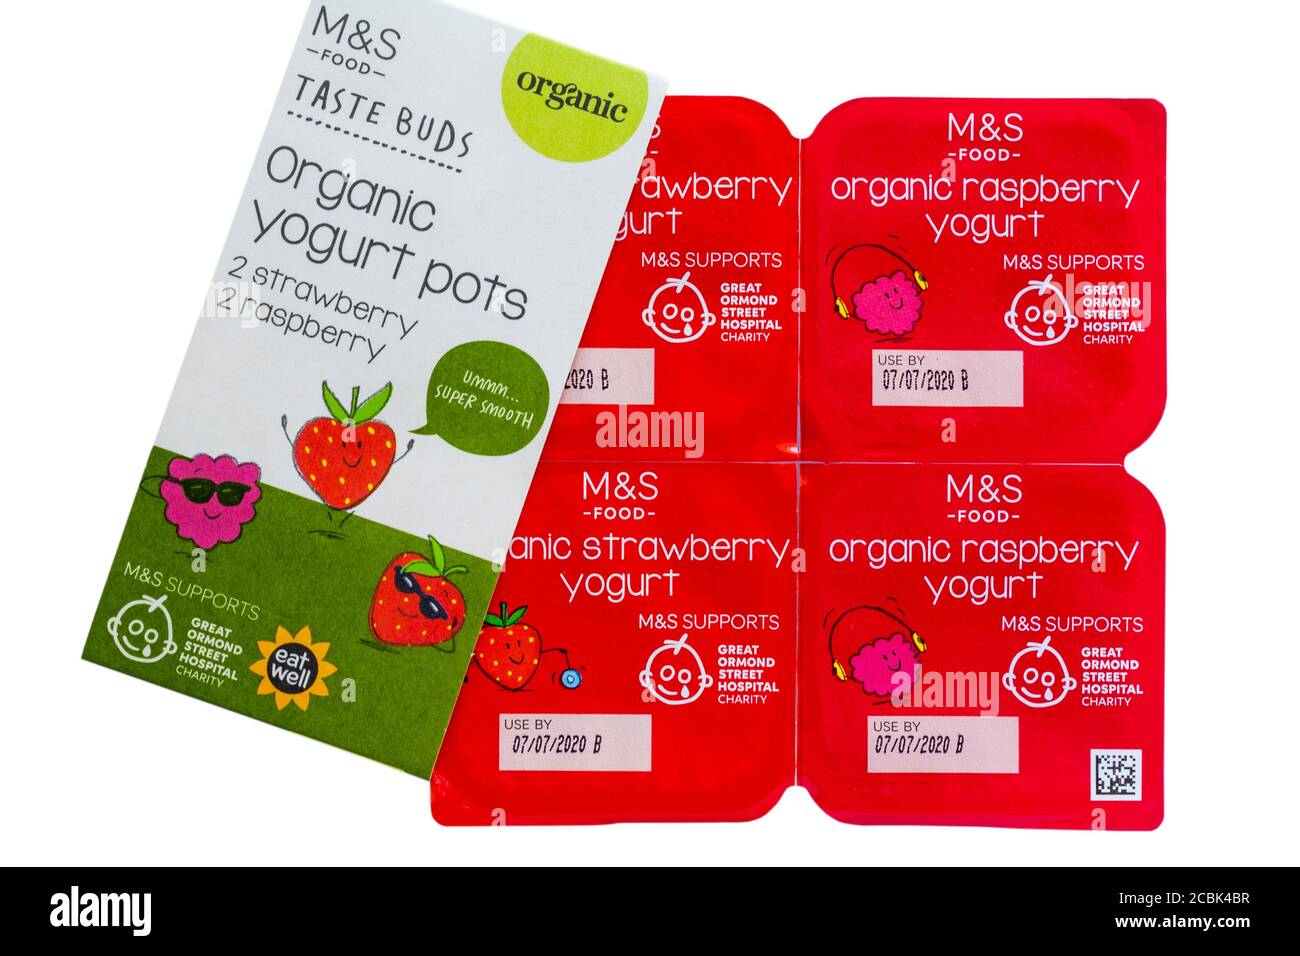 Pack von M&S Taste Knospen Bio-Joghurt Töpfe isoliert auf weißem Hintergrund - Erdbeere & Himbeere Aromen - Kinder Bio-Joghurt Auswahl Pack Stockfoto